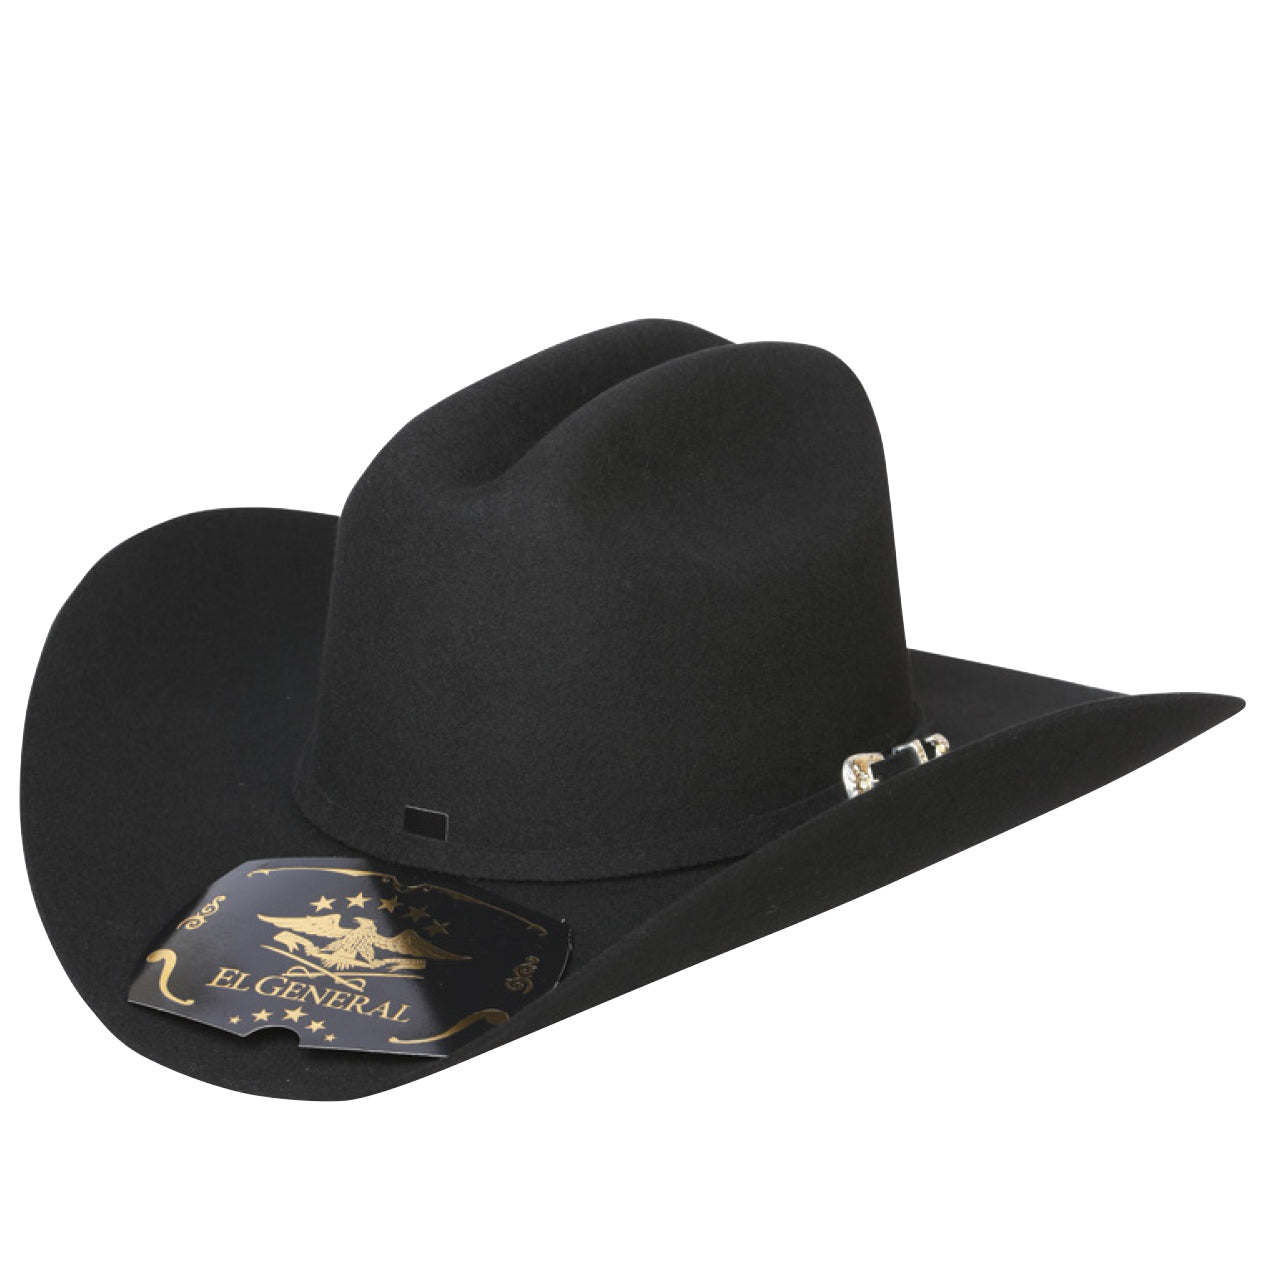 El General Texana Estilo Joan Sebastian Cowboy Hat